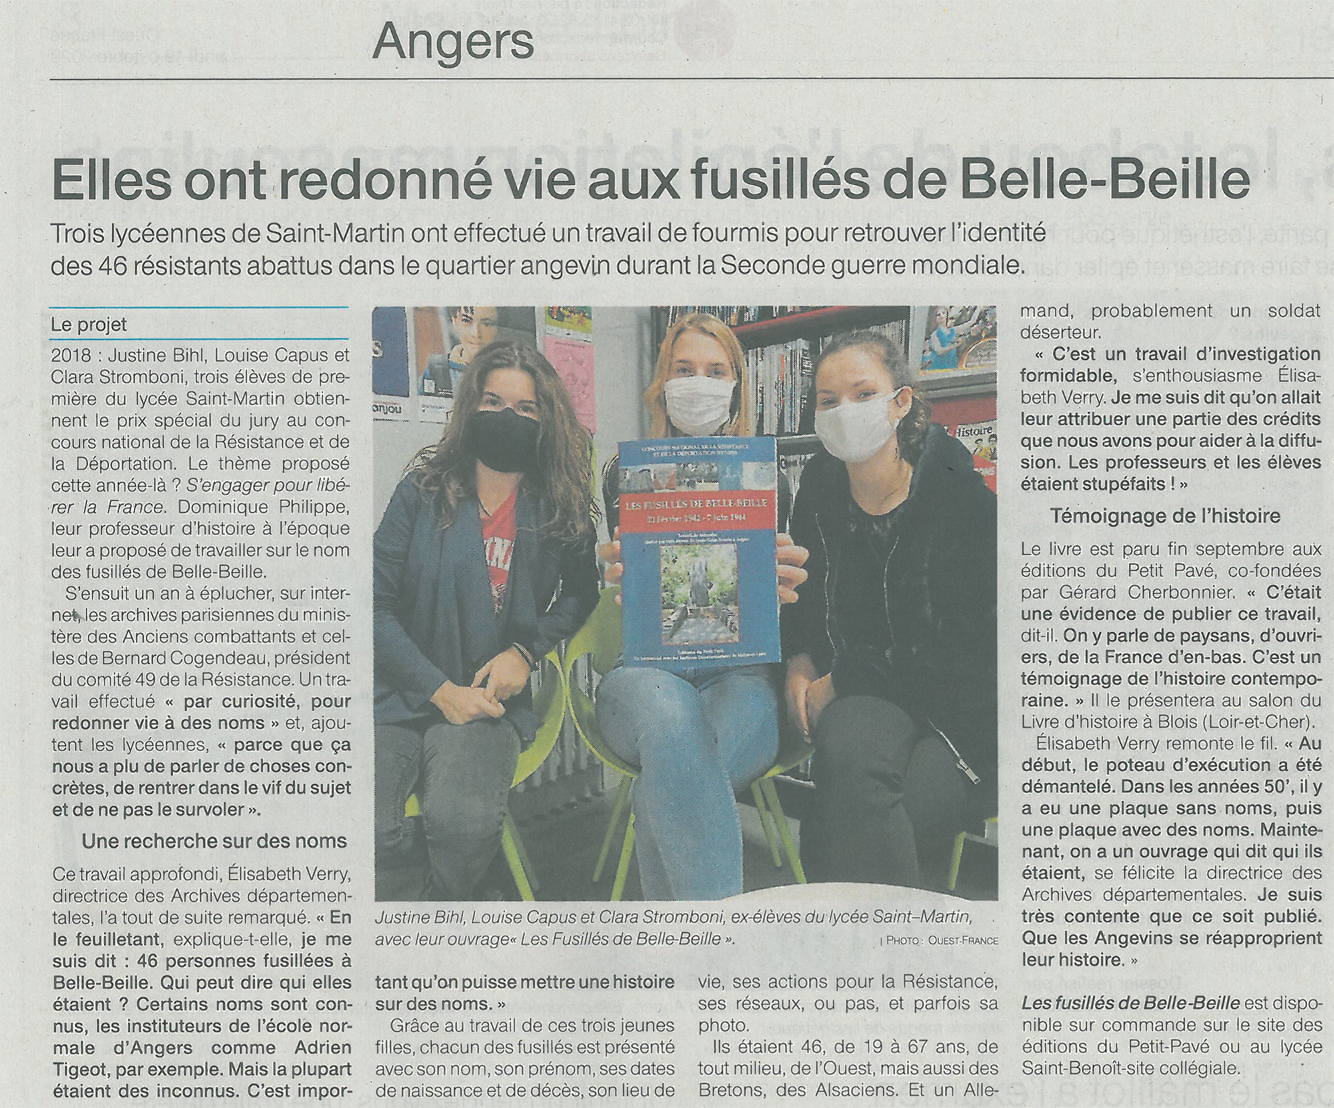 Elles ont redonn� vie aux fusill�s de Belle-Beille - Photo article_presse_fusilles_de_belle-beille_02.jpg